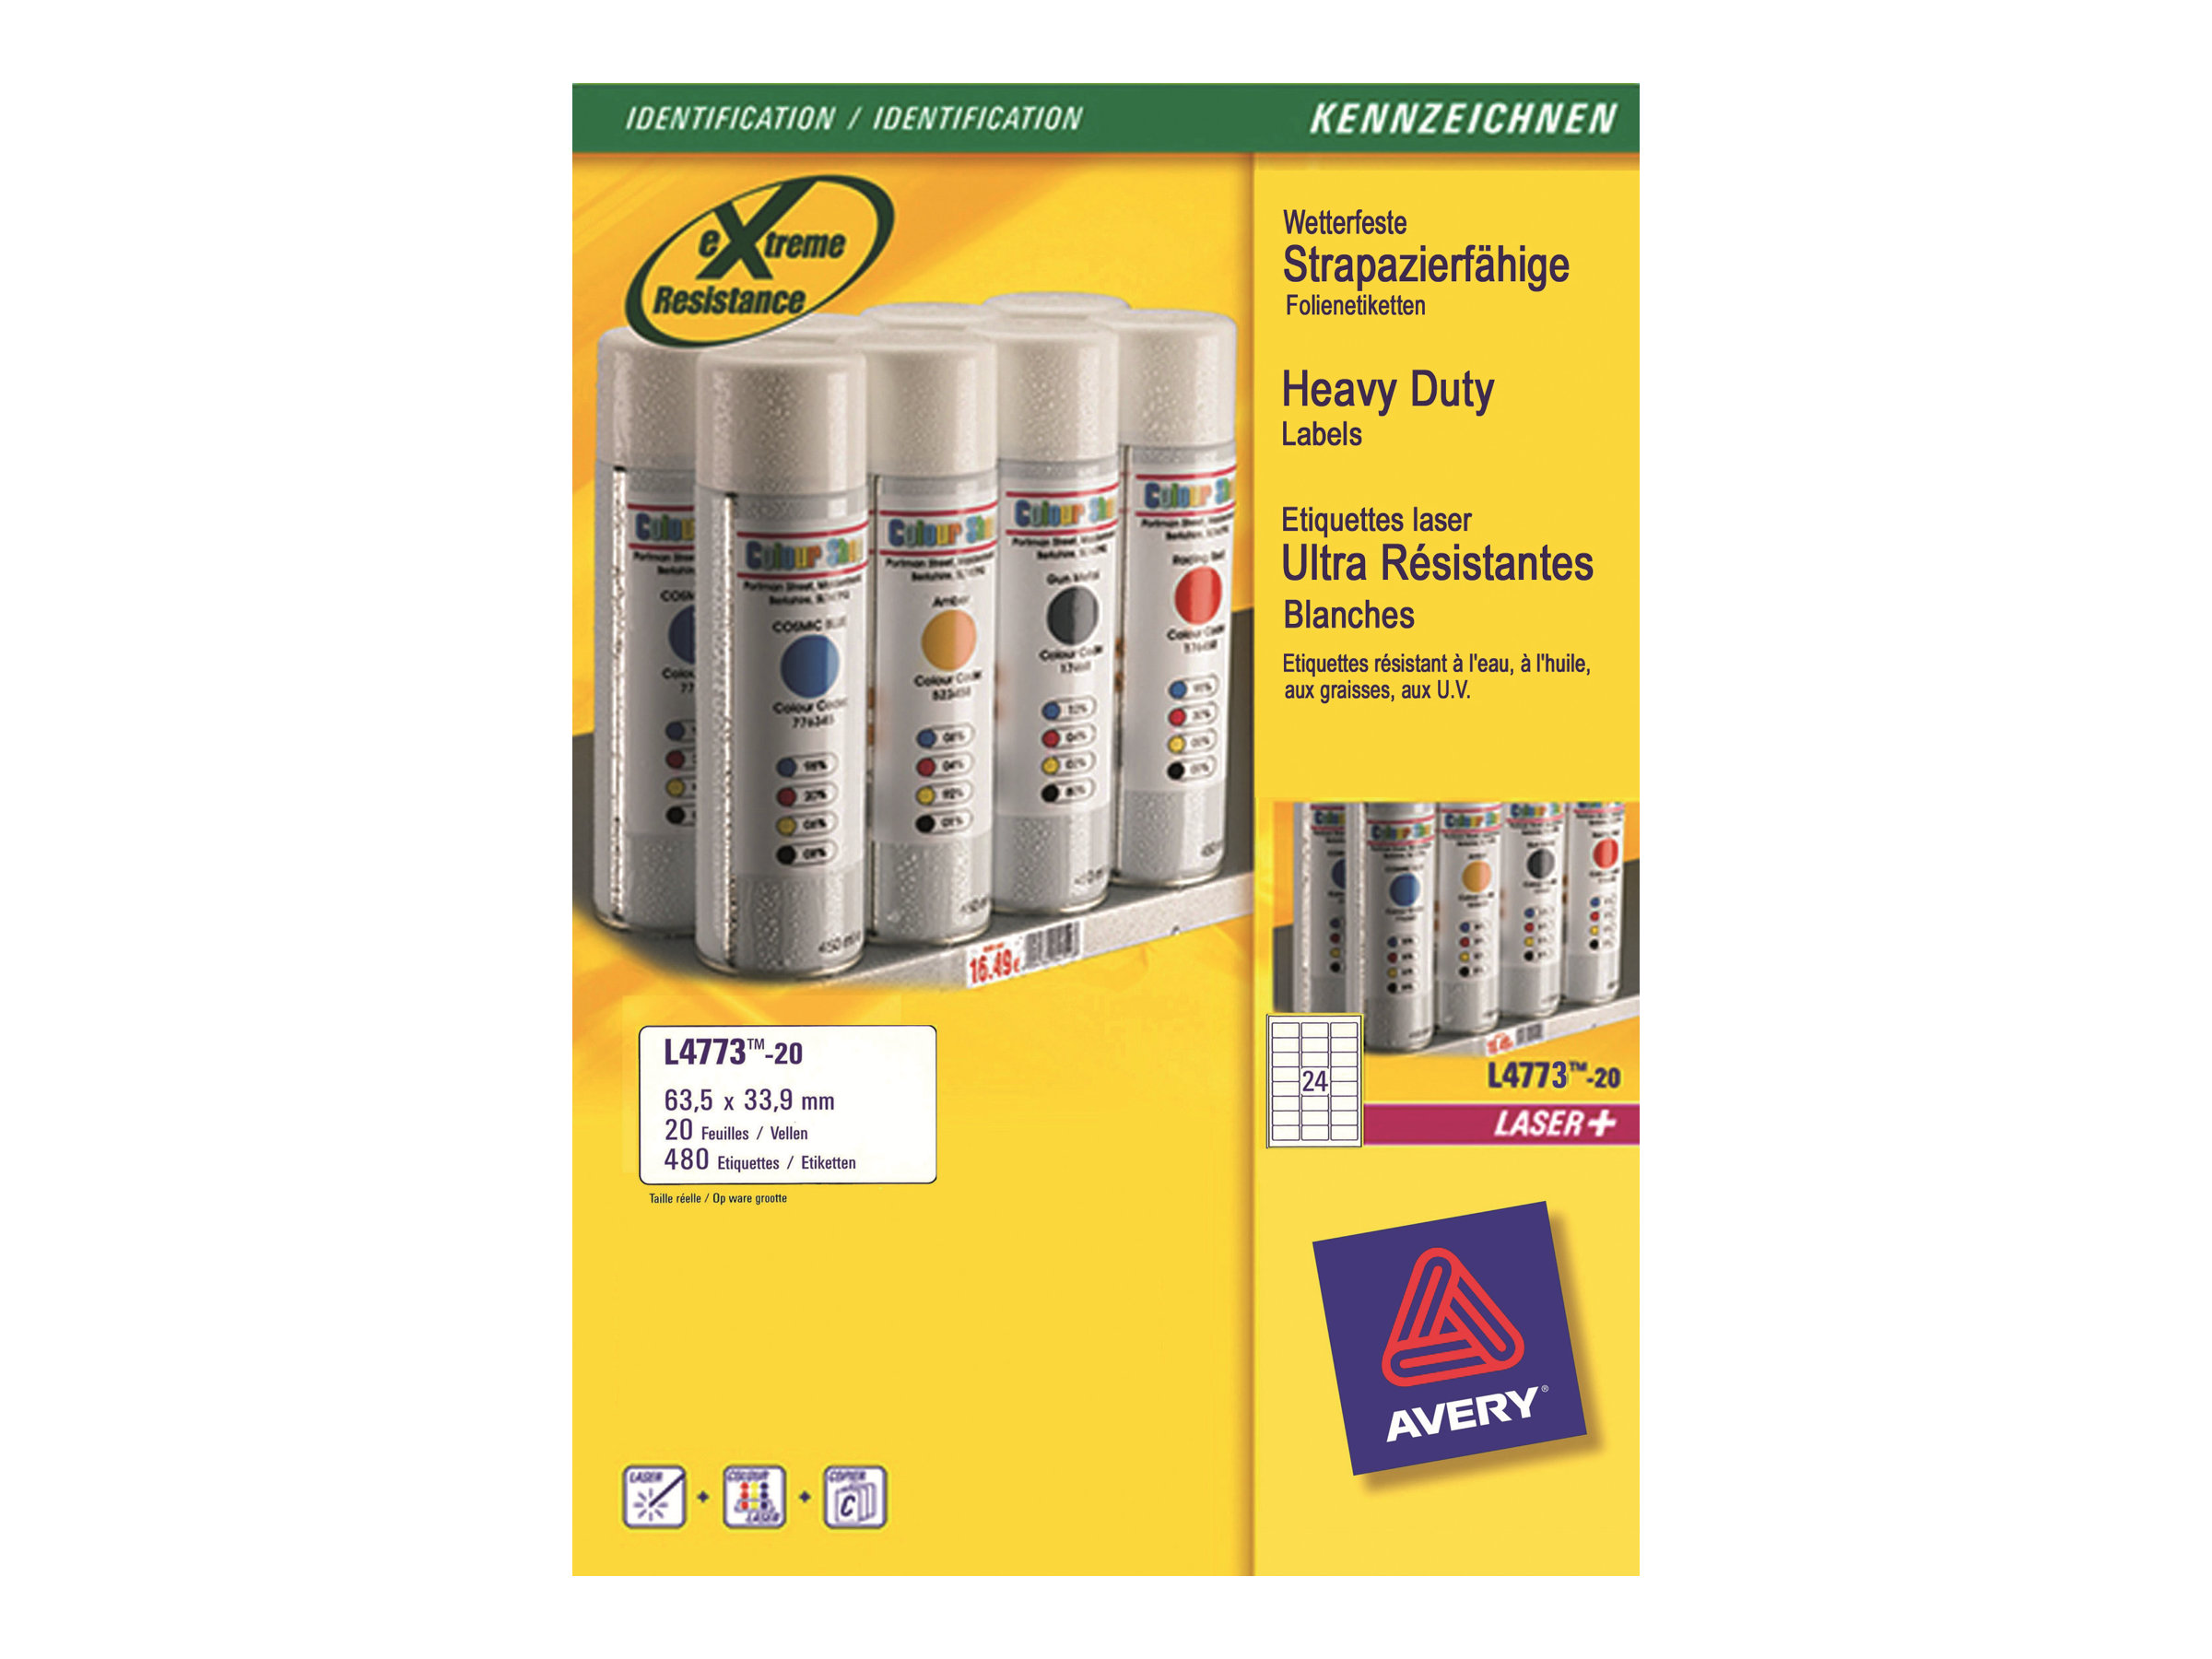 Avery Heavy Duty Laser Labels - Polyester - 63.5 x 33.9 mm 480 Etikett(en) (20 Bogen x 24) Etiketten